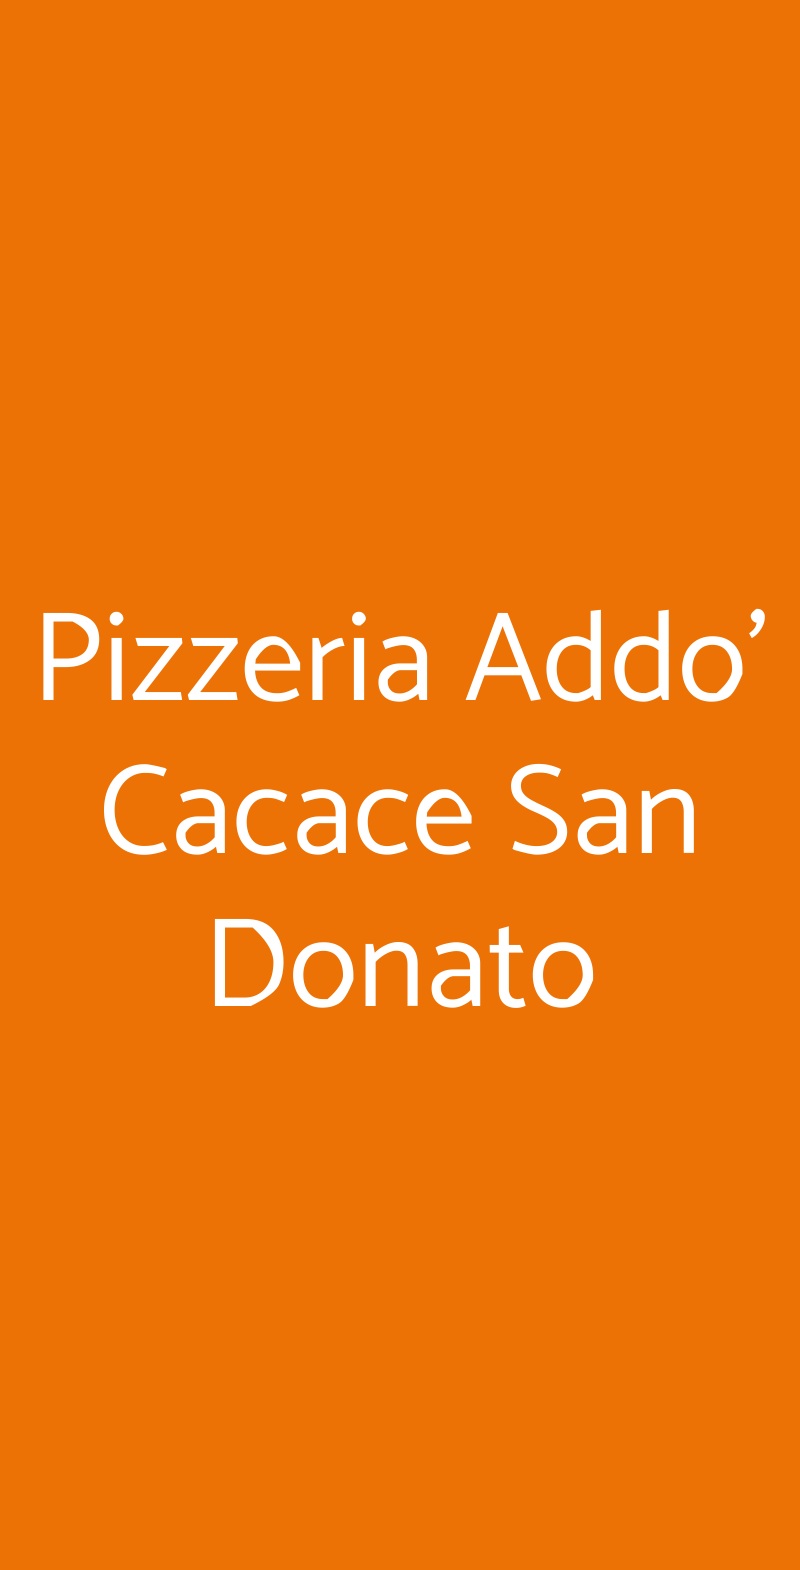 Pizzeria Addo' Cacace San Donato Napoli menù 1 pagina